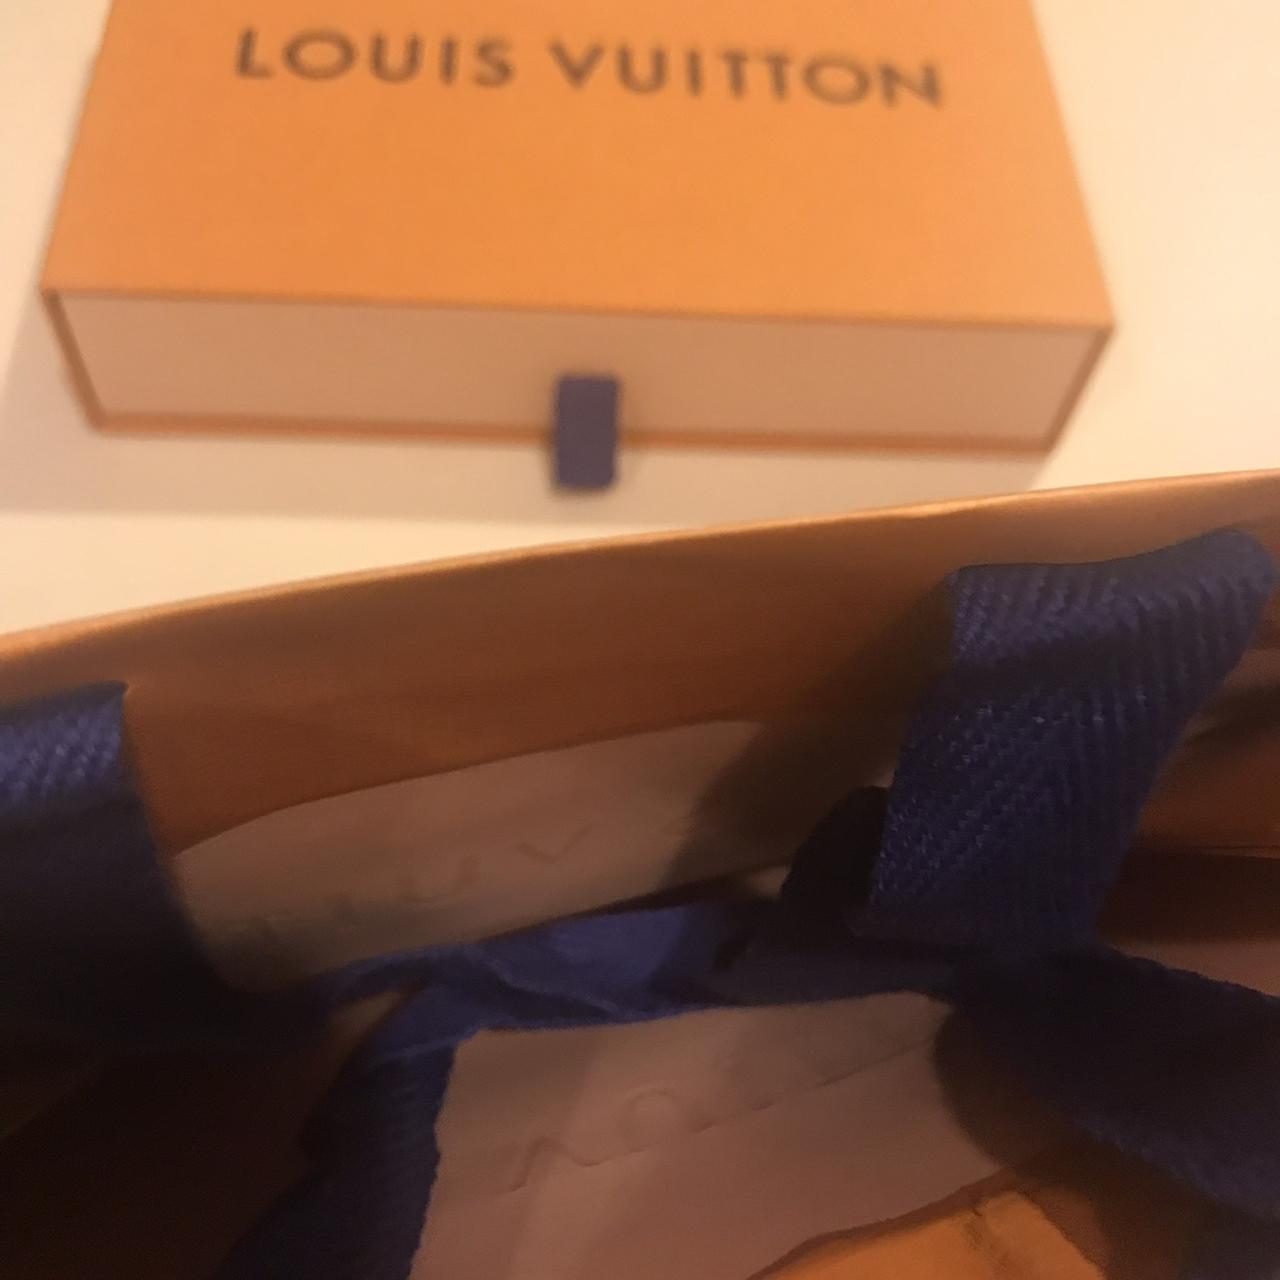 Authentic Louis Vuitton Empty Large shopper box and - Depop